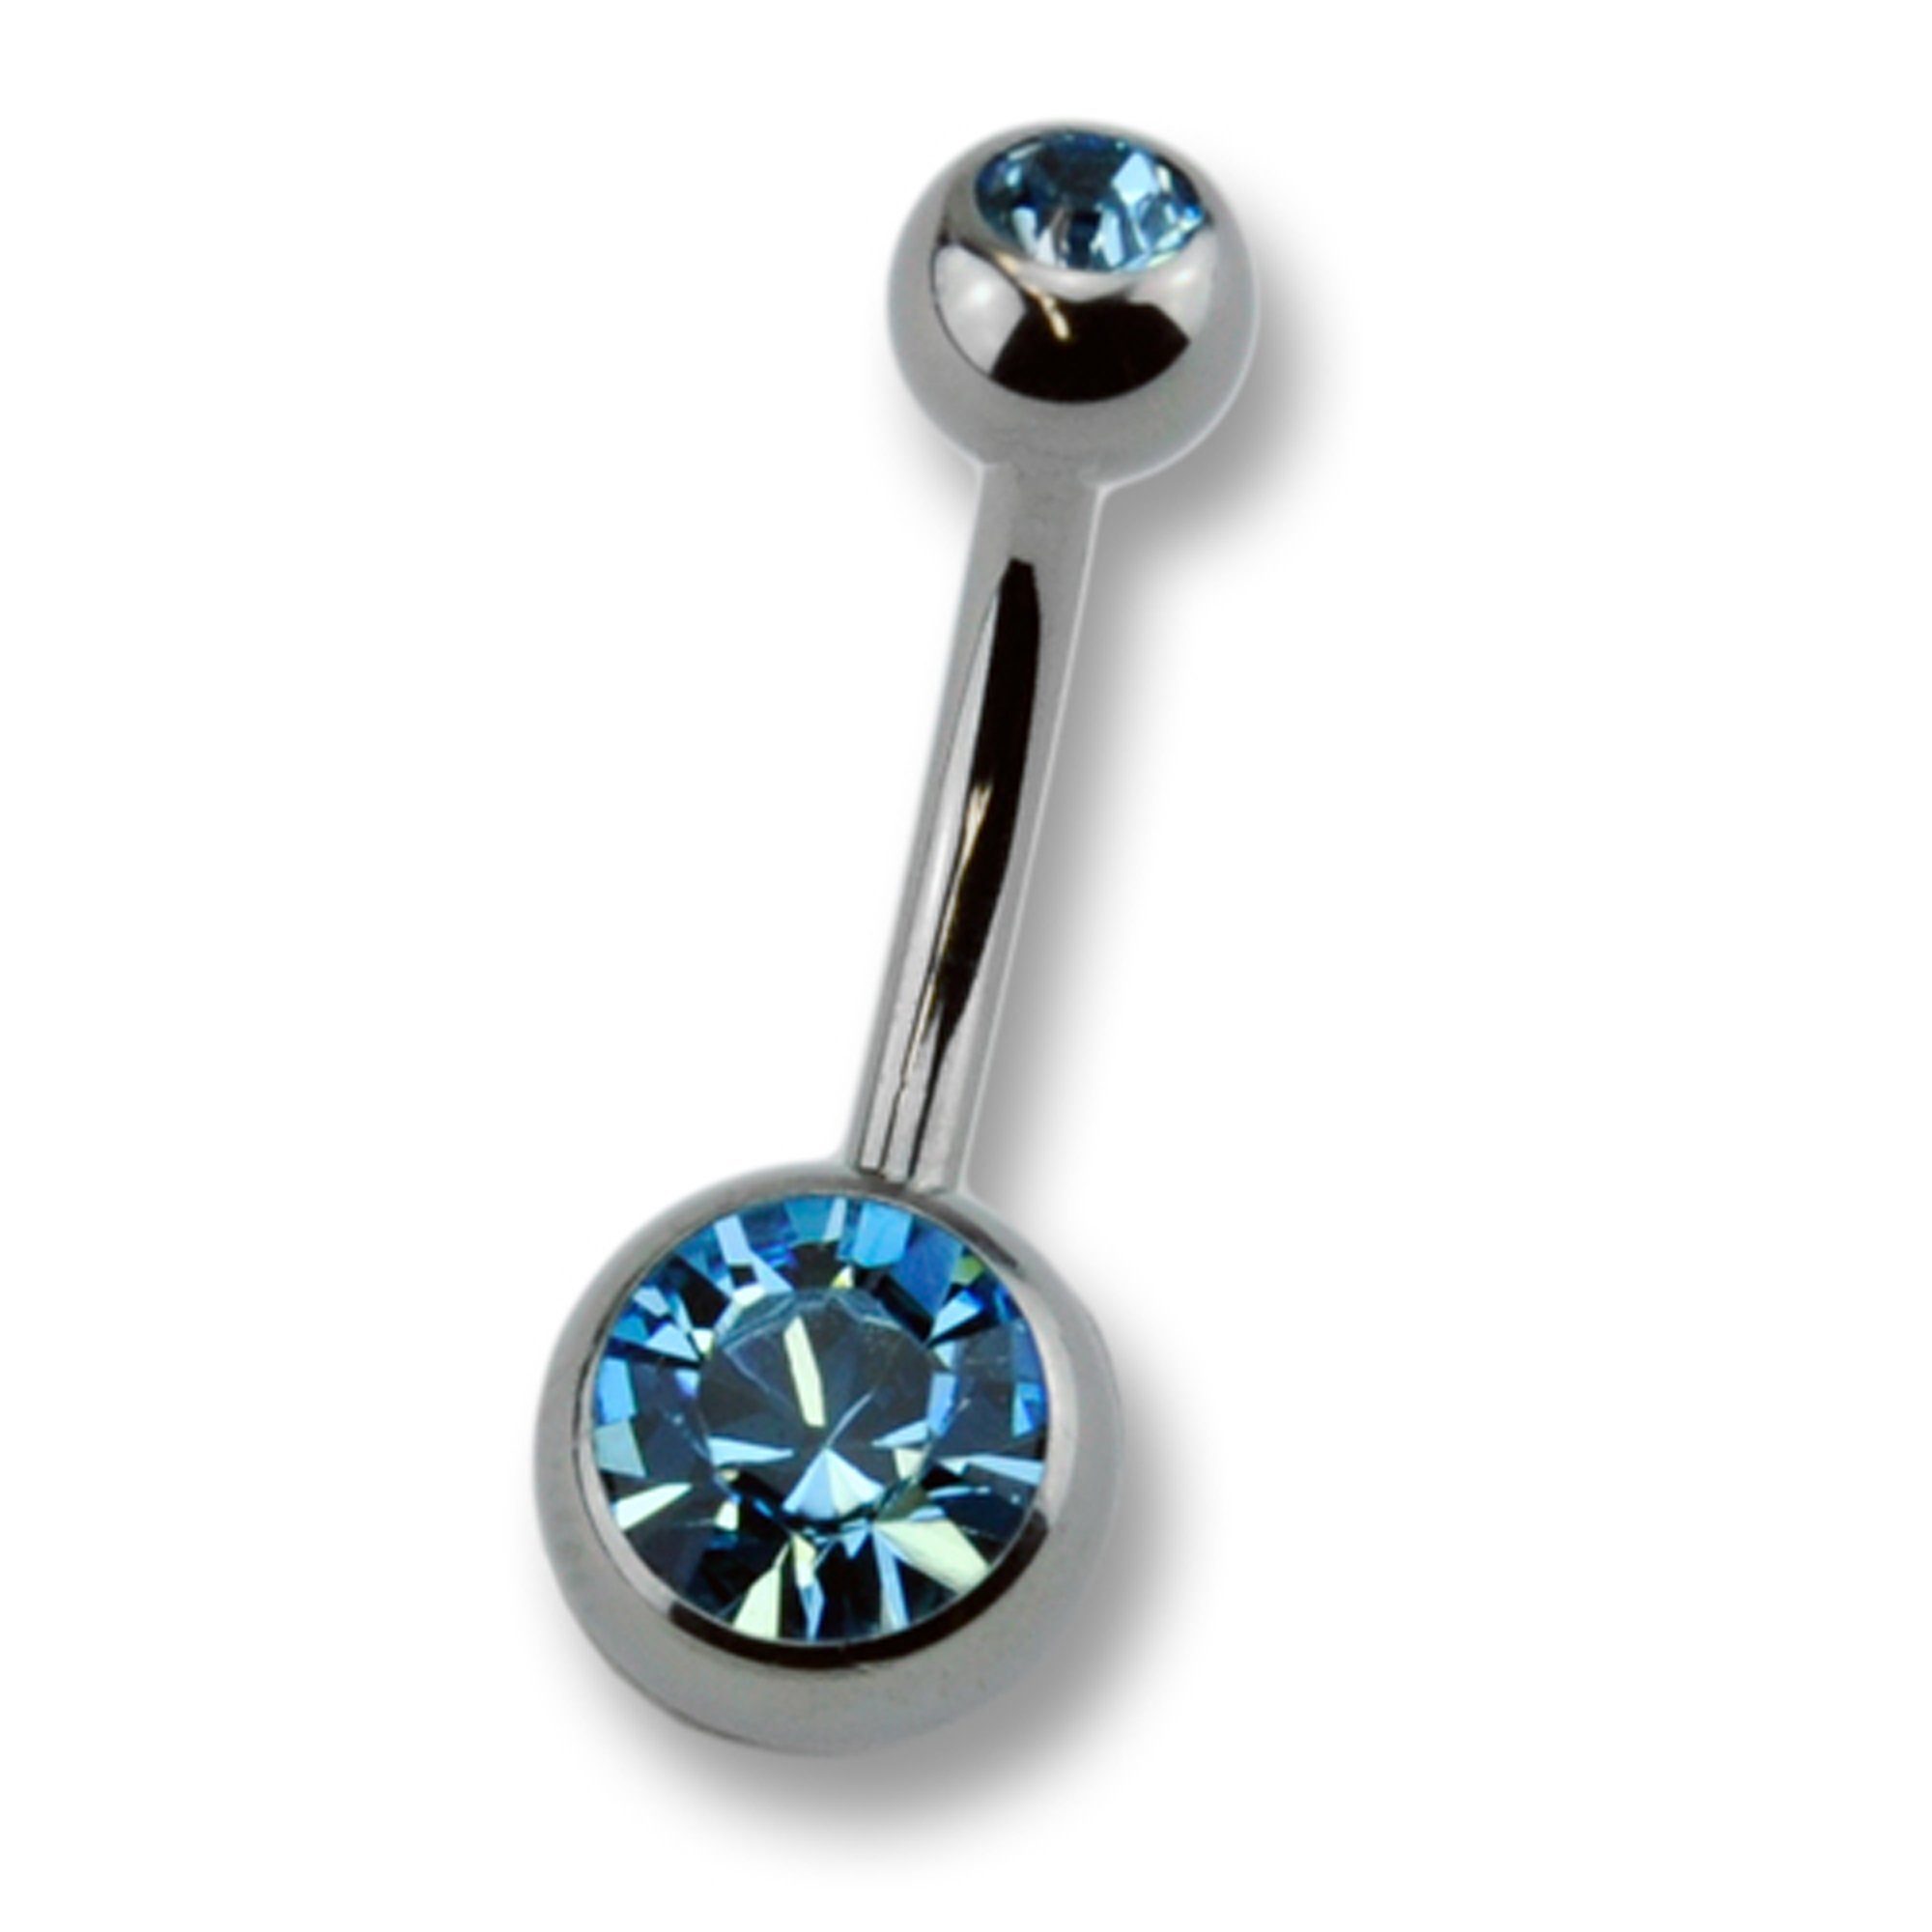 Zeeme Bauchnabelpiercing dunkelblau, silberfarben Verarbeitung Hochwertige Titan Kristall